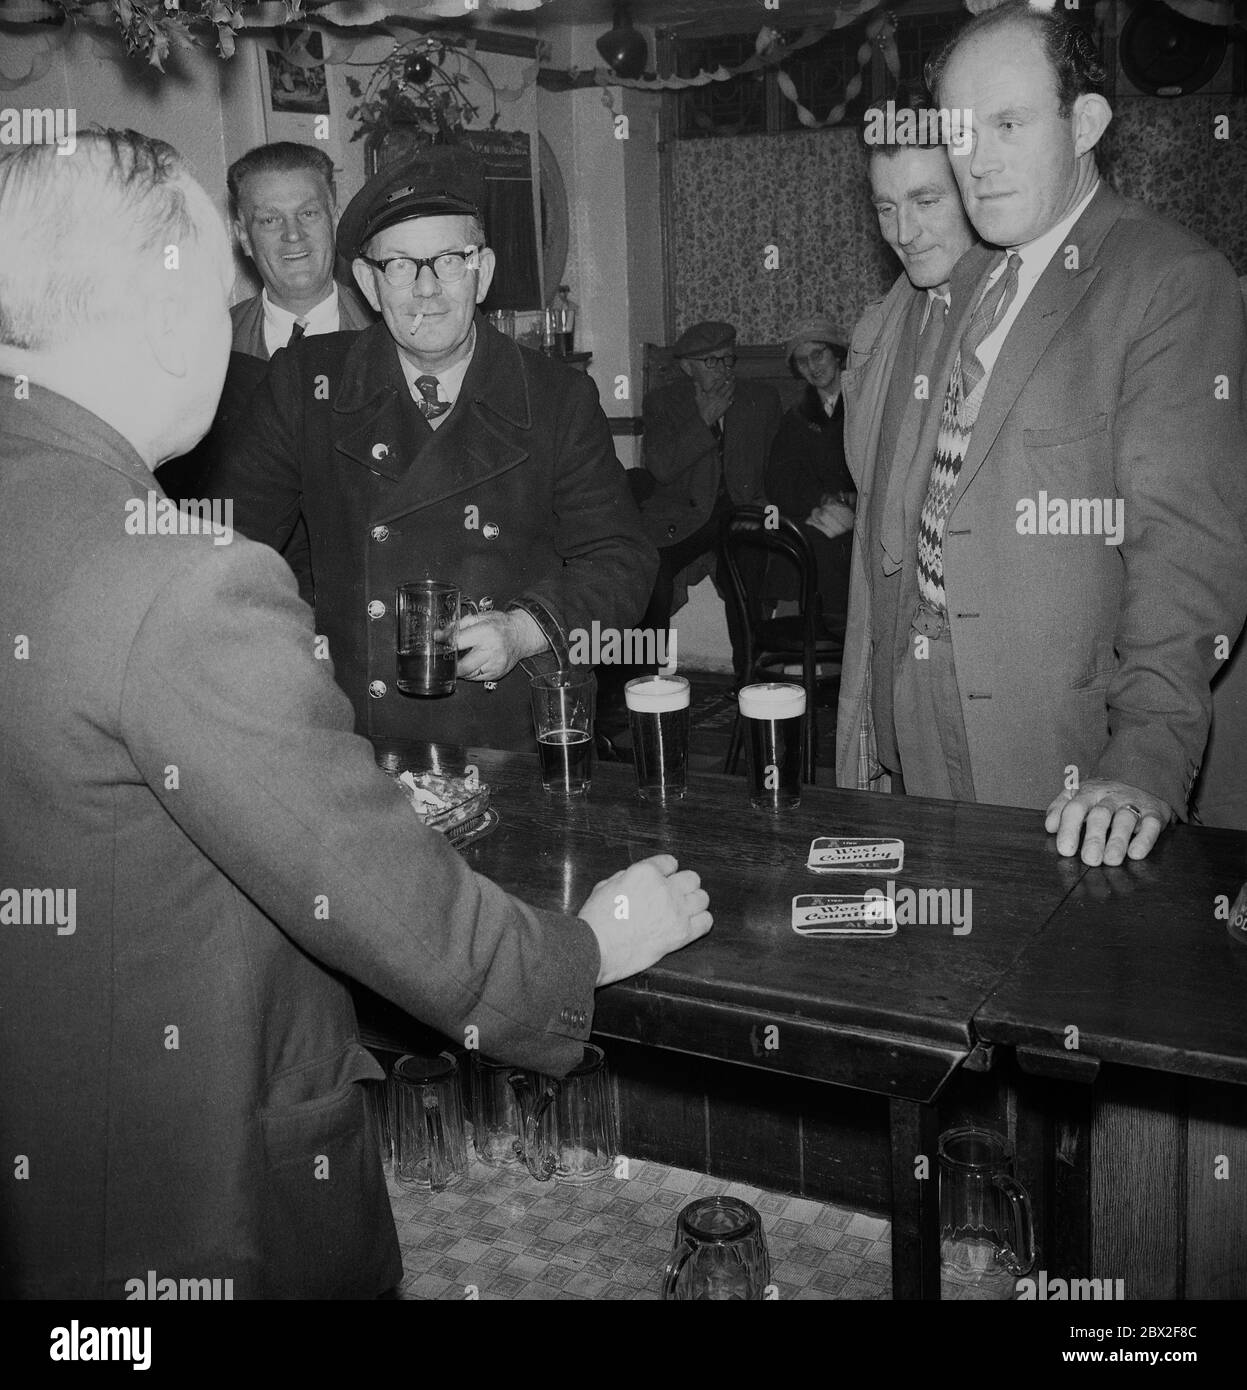 Années 1960, historiques, des hommes boivent des pintes de bière au bar d'un pub parlant au propriétaire, avec un monsieur tenant un tankard et fumant une cigarette, Angleterre, Royaume-Uni. Banque D'Images